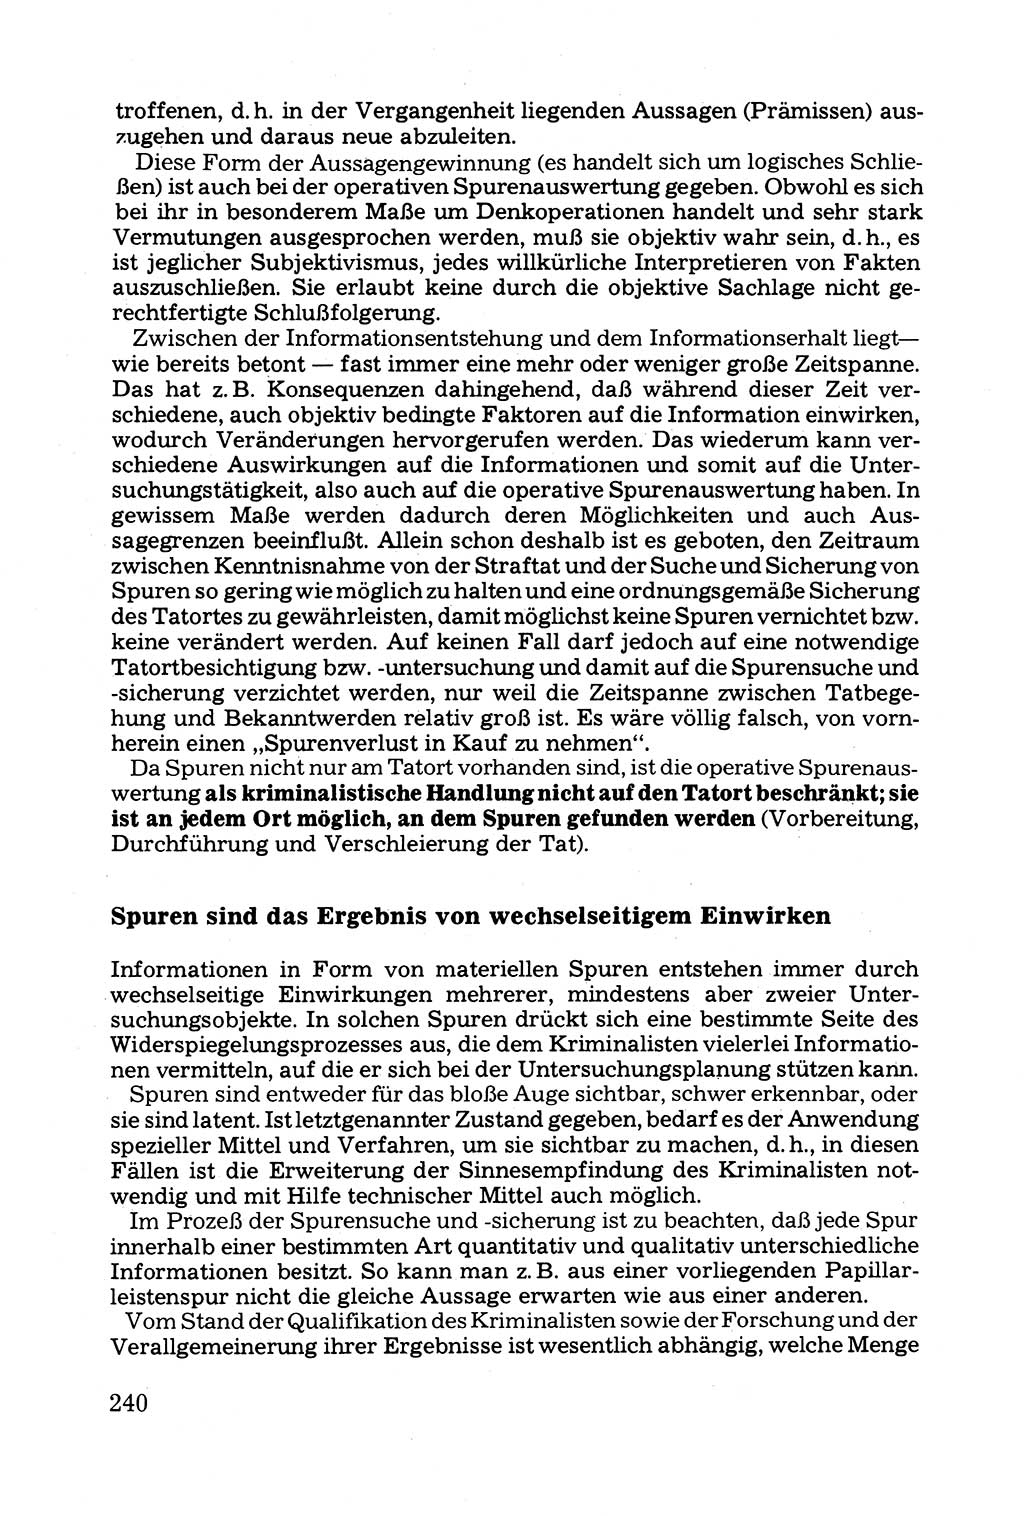 Grundfragen der Beweisführung im Ermittlungsverfahren [Deutsche Demokratische Republik (DDR)] 1980, Seite 240 (Bws.-Fhrg. EV DDR 1980, S. 240)